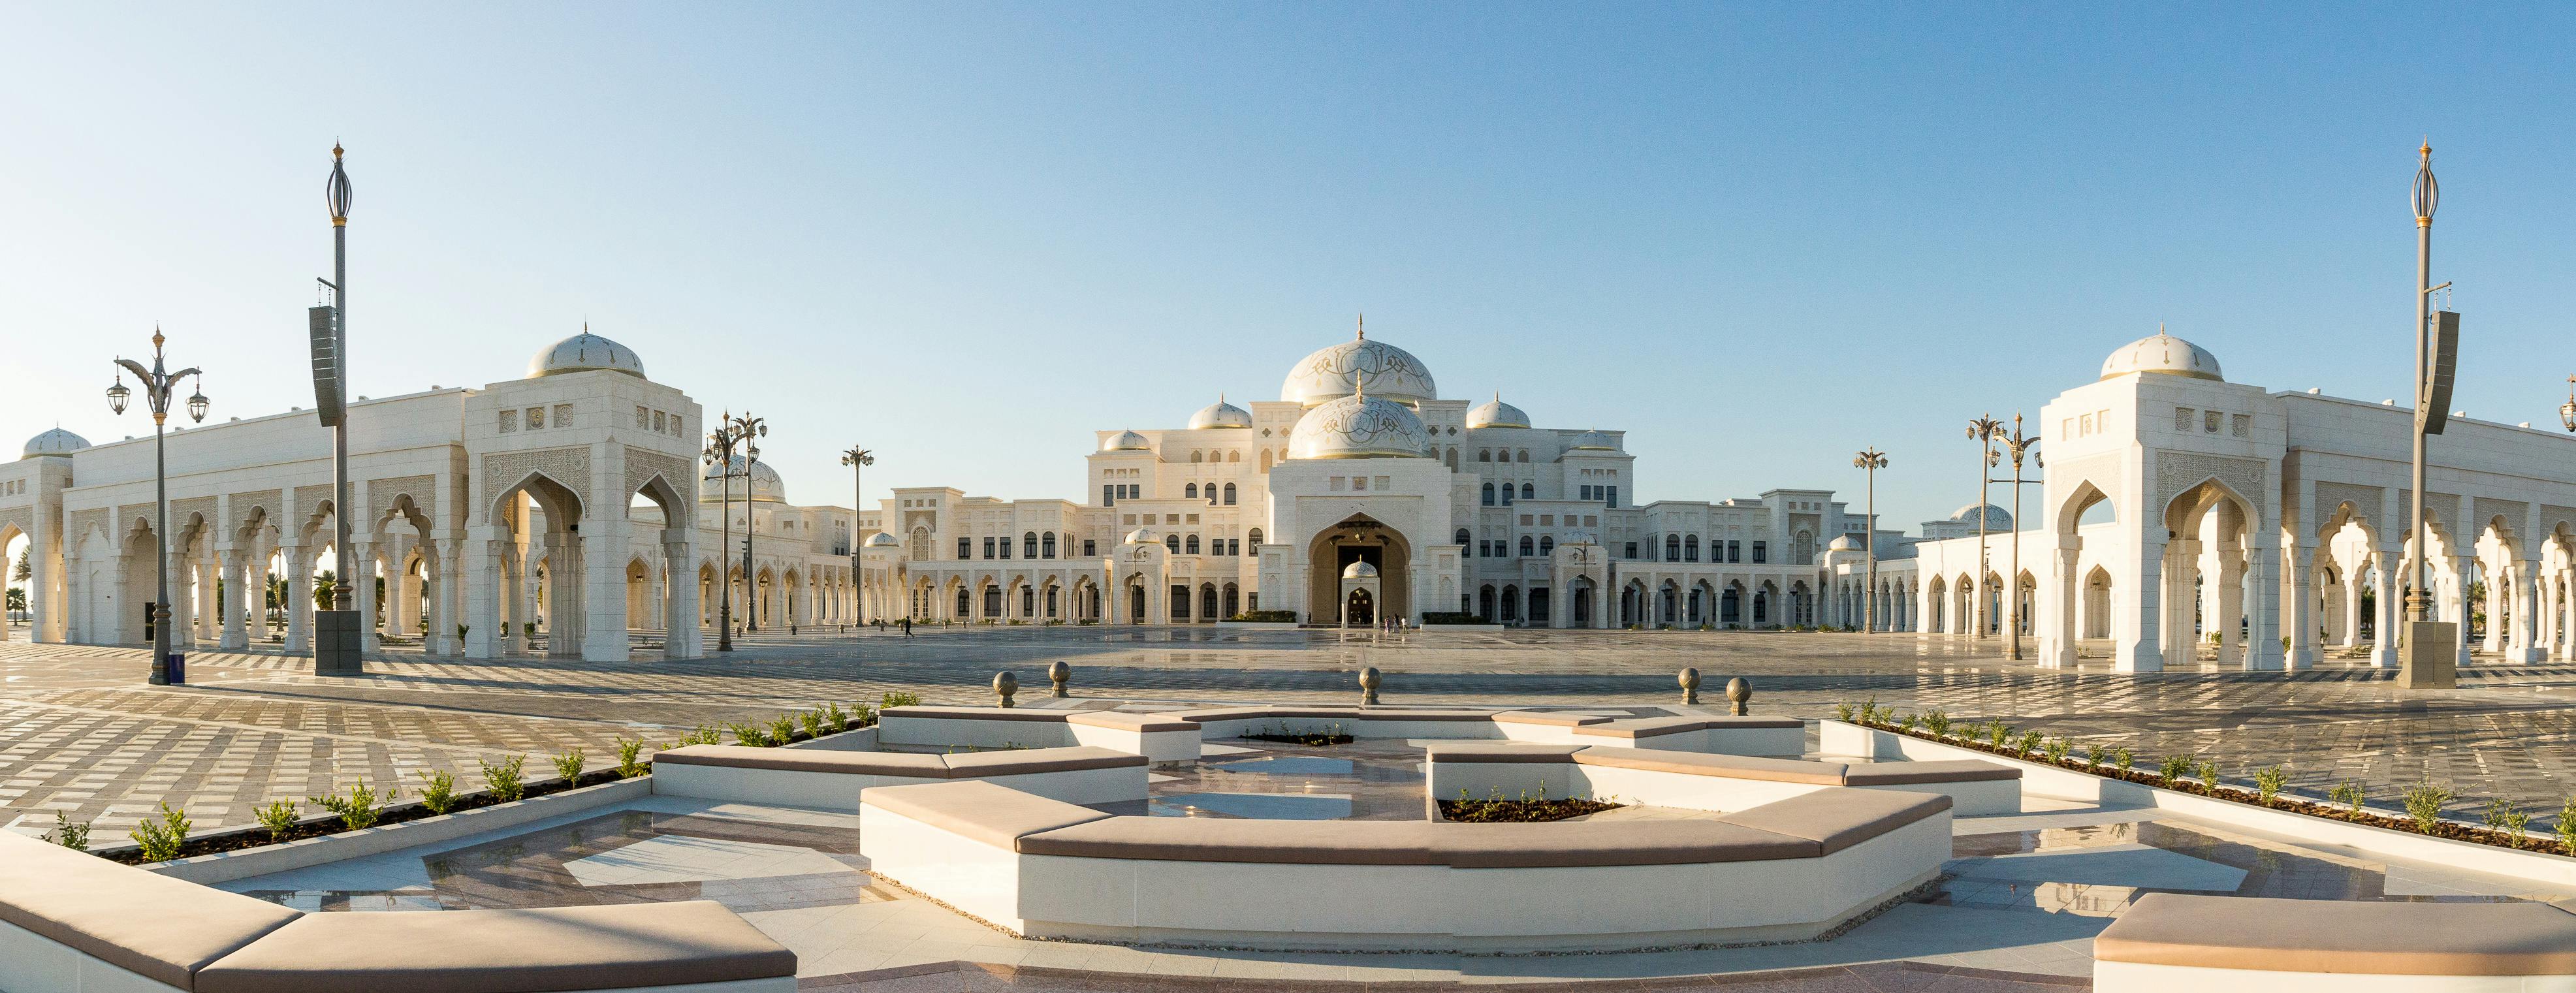 Qasr Al Watan - Het presidentieel paleis